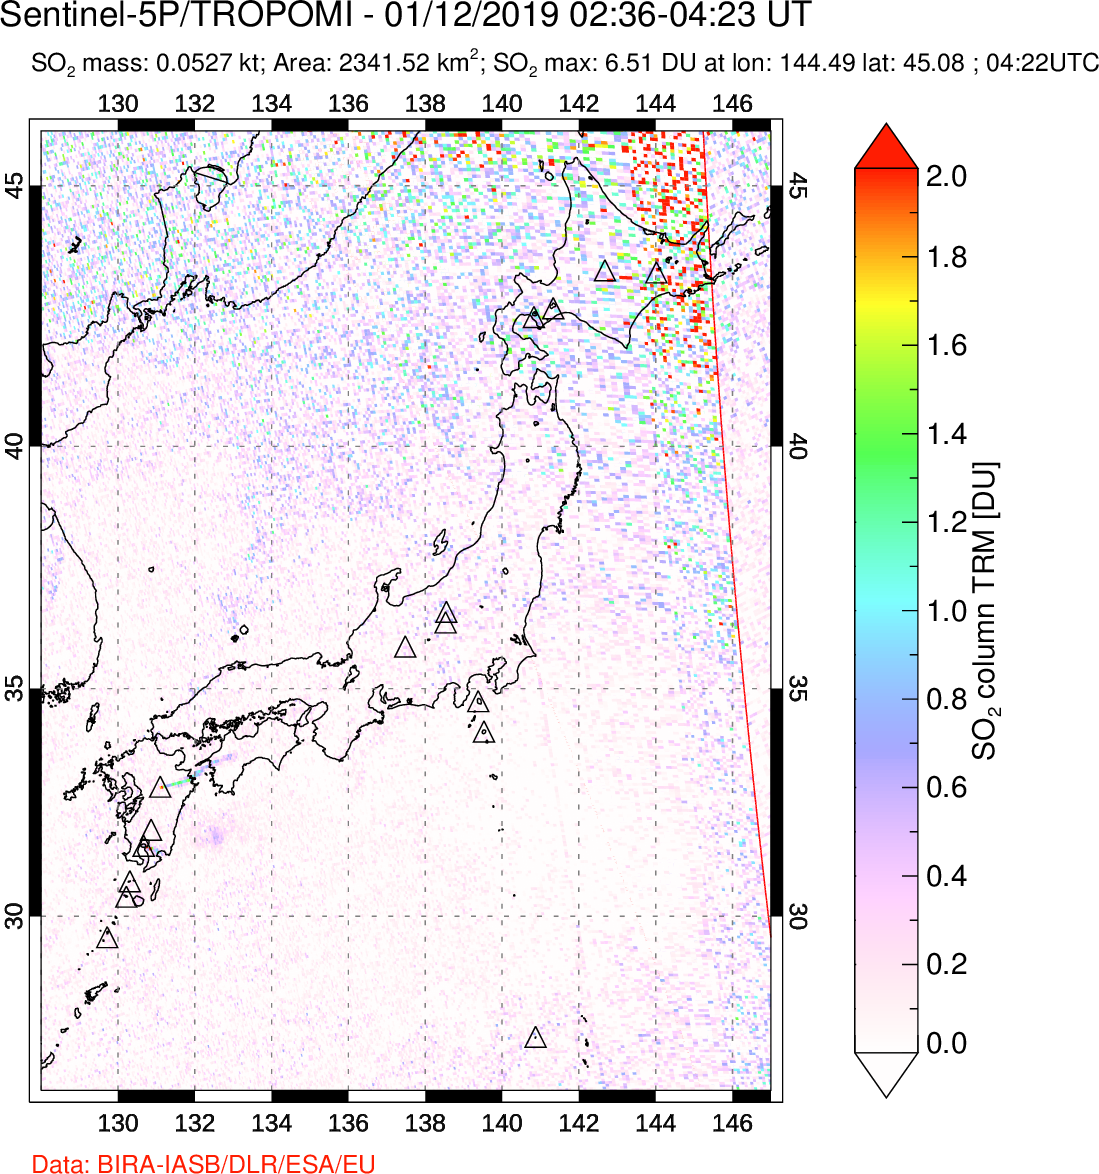 A sulfur dioxide image over Japan on Jan 12, 2019.